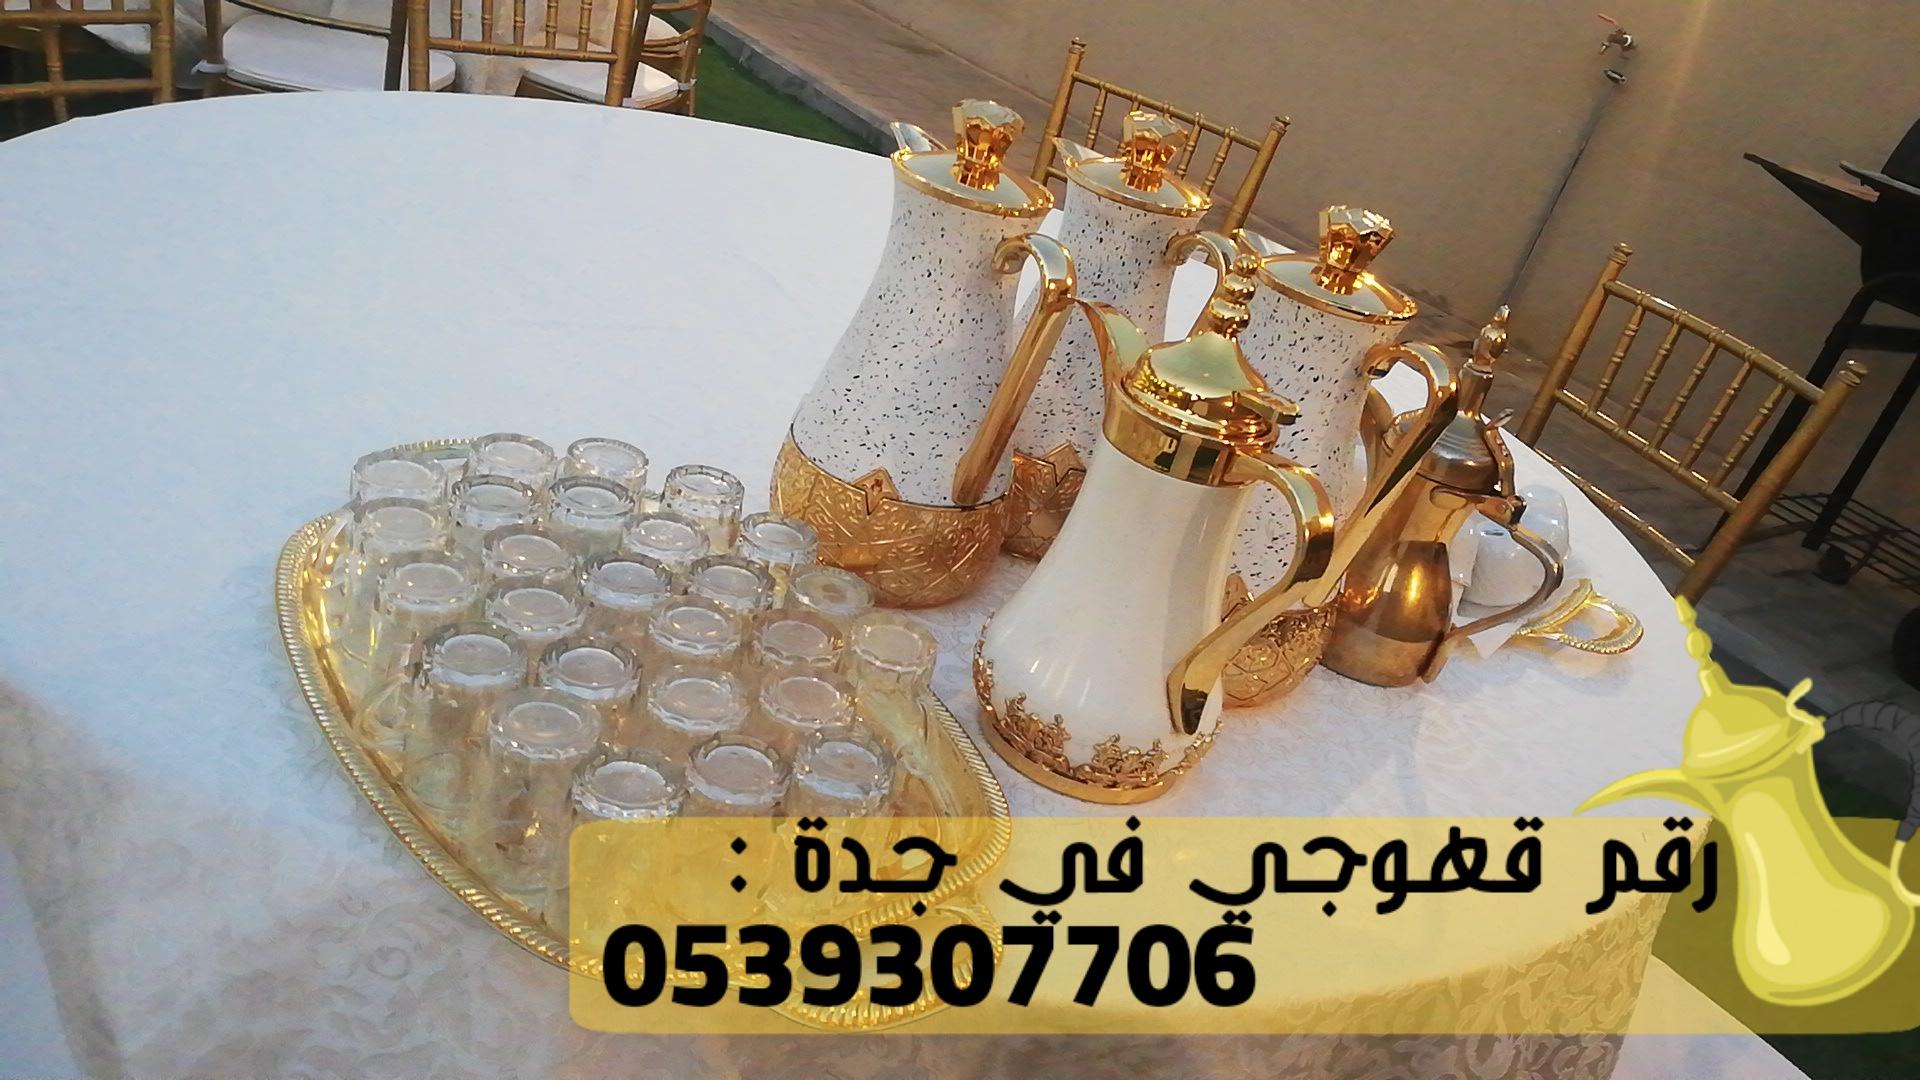 صبابين قهوه في جدة و مباشرين قهوة,0539307706 804078417